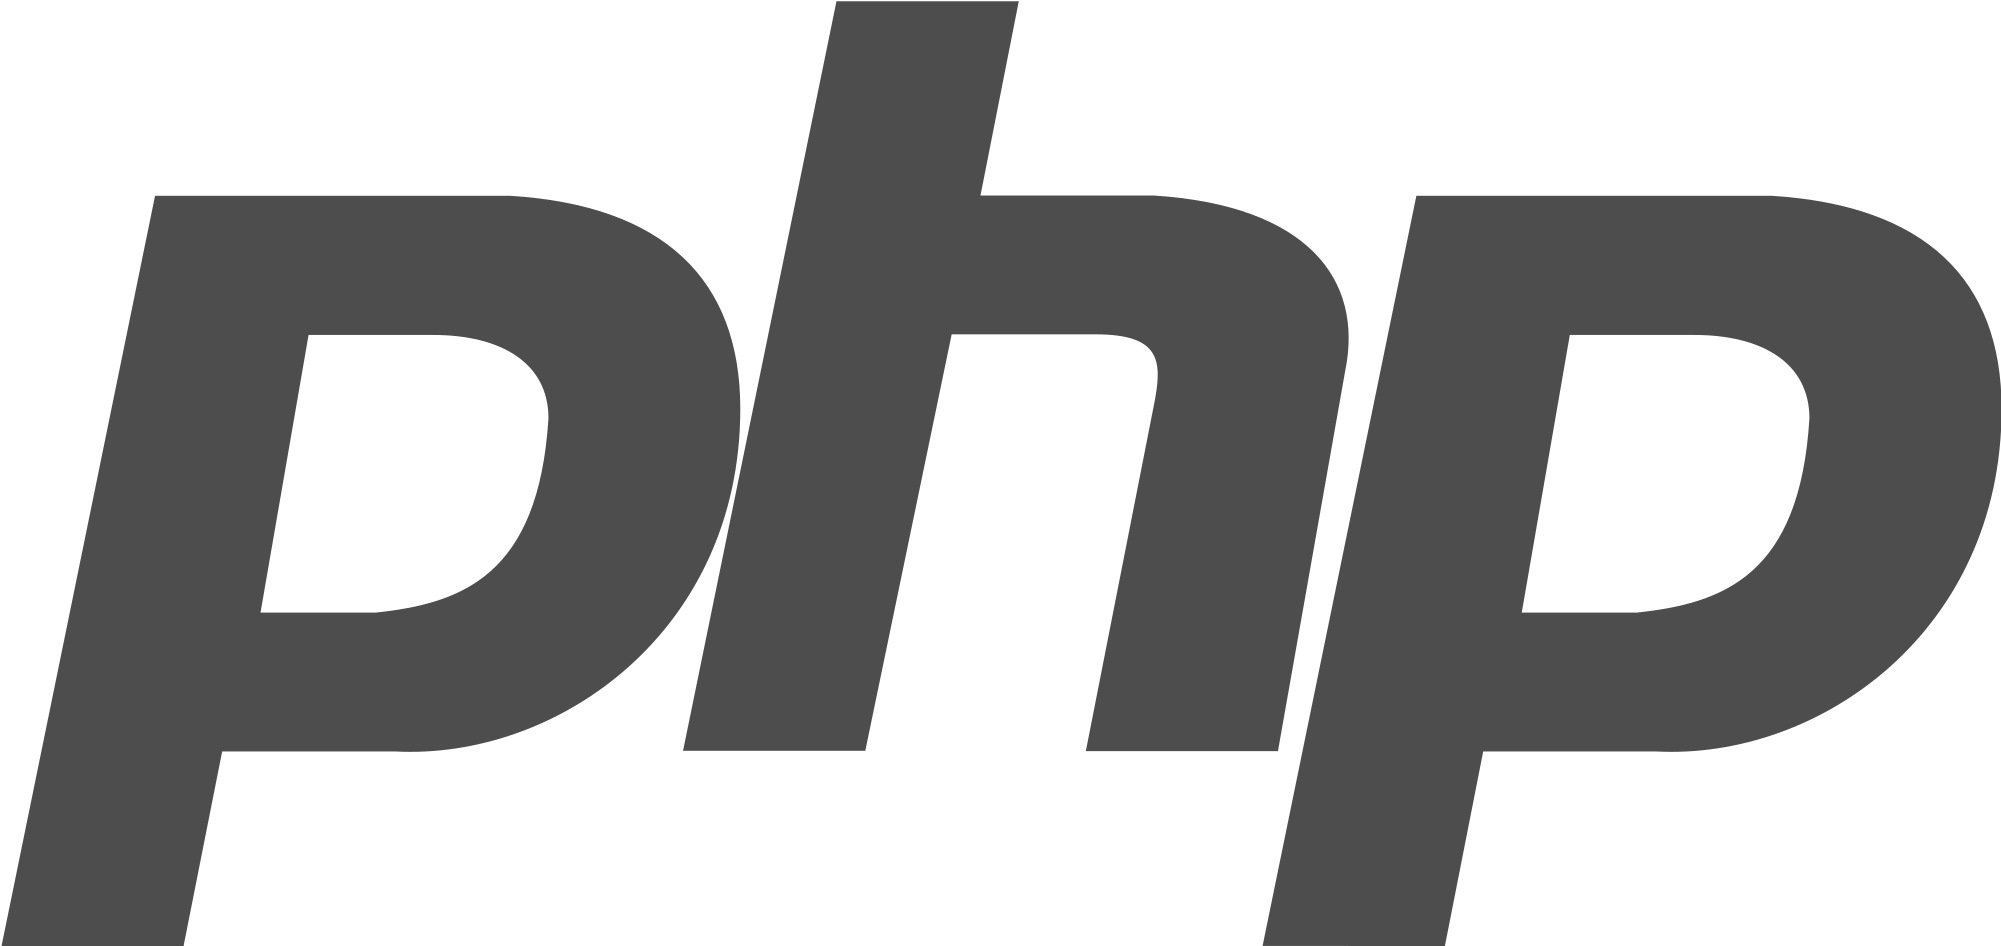 Php logo. Php логотип. Серый логотип. Php PNG. Php вектор.